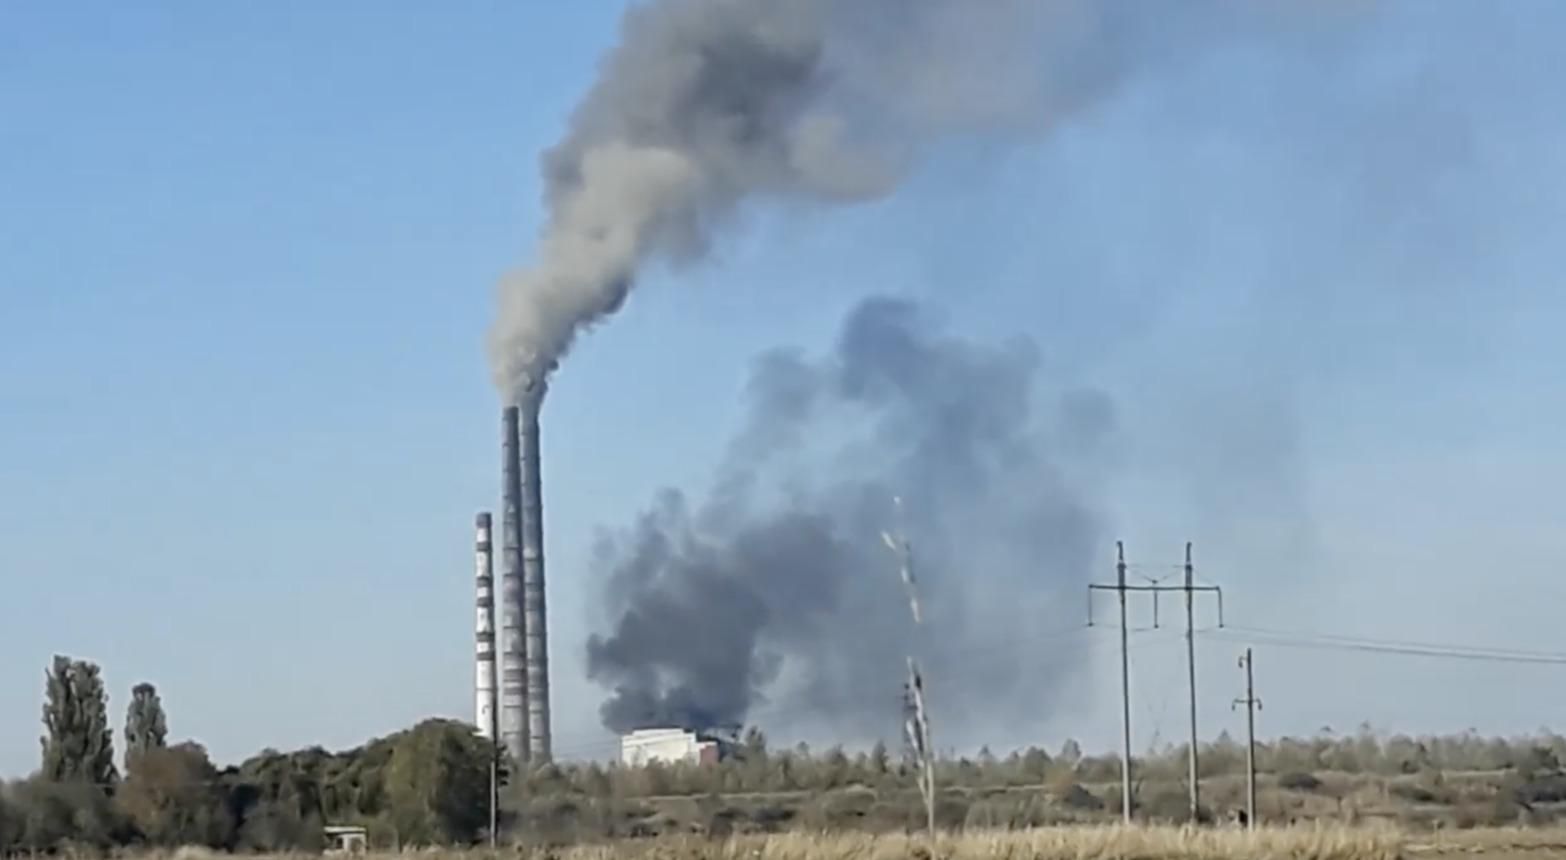 Аварійна зупинка енергоблоку: людей знову налякав дим з Бурштинської ТЕС - Україна новини - 24 Канал